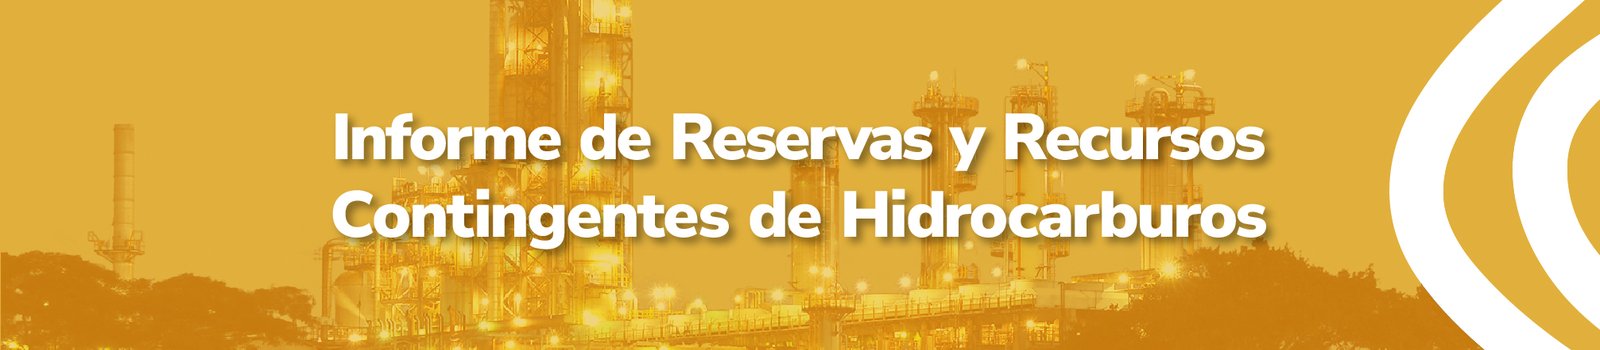 Informe de reservas y recursos contingentes de hidrocarburos